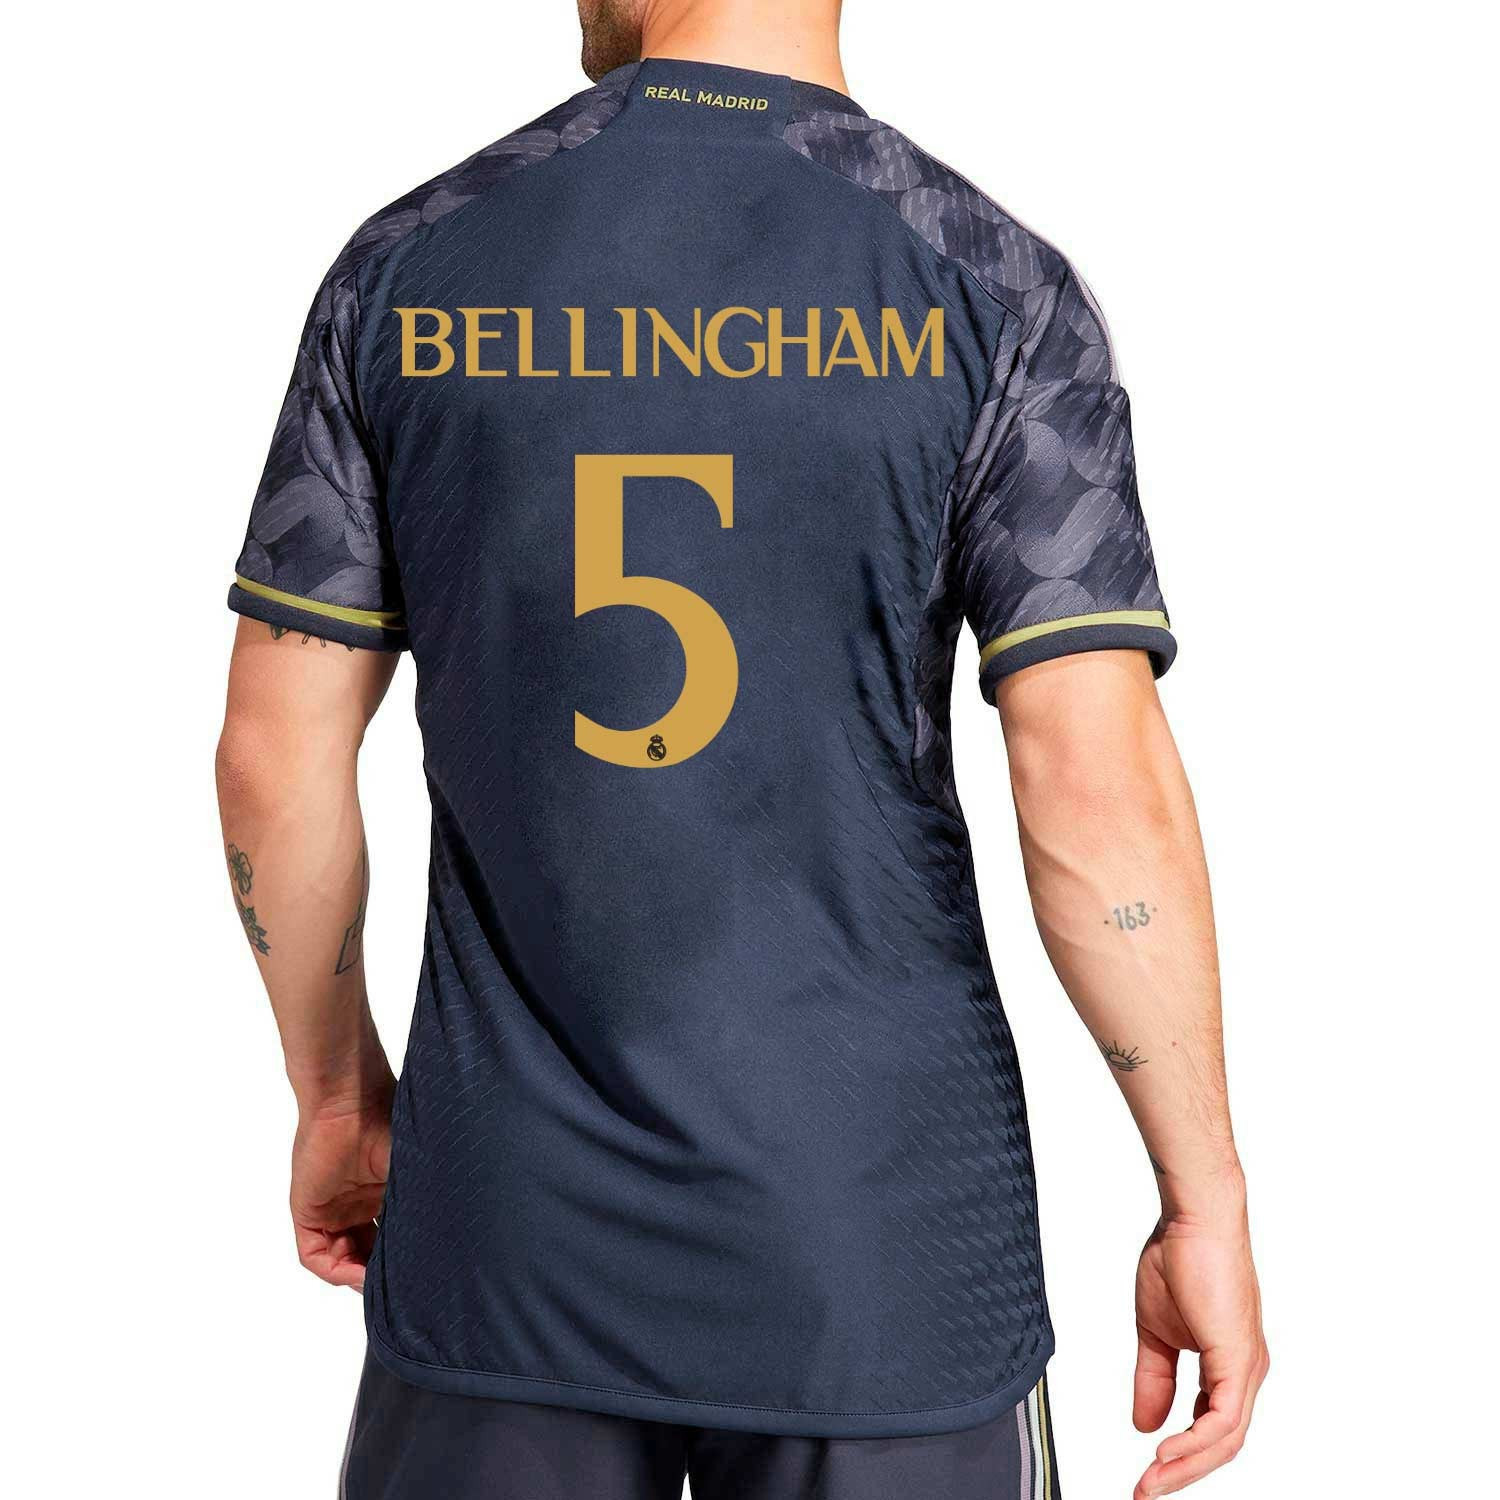 Camiseta adidas R Madrid mujer Bellingham 23-24 authentic